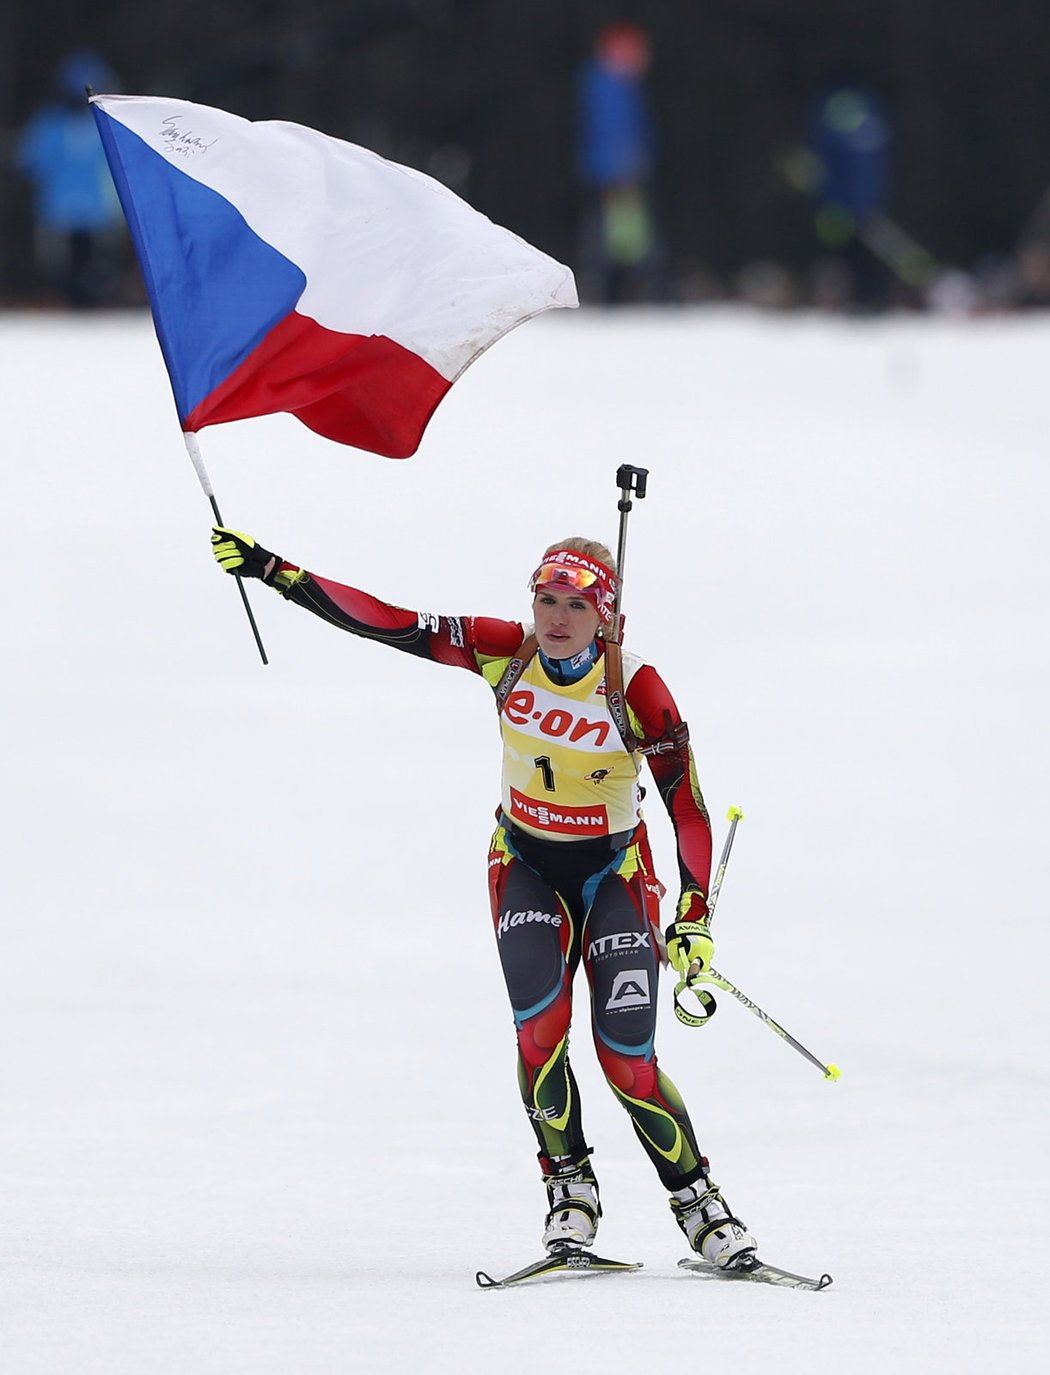 Česká biatlonistka Gabriela Soukalová dojela do cíle s českou vlajkou v ruce. Vedoucí žena Světového poháru na střelnici ani jednou neminula a celý závod jela bezpečně v čele. Znovu potvrdila skvělou formu v olympijské sezoně.